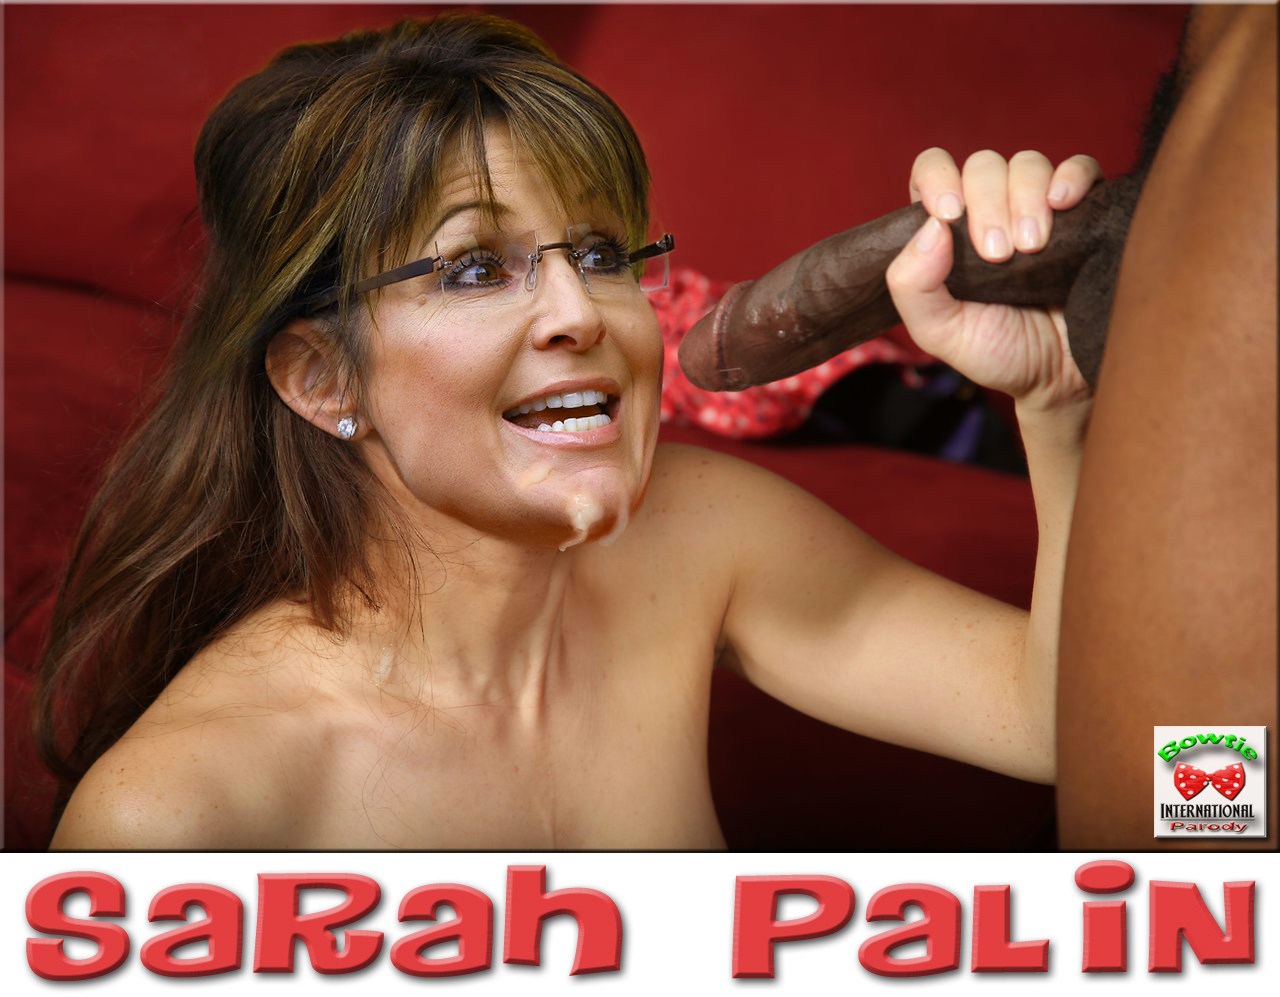 Sarah palin xxx